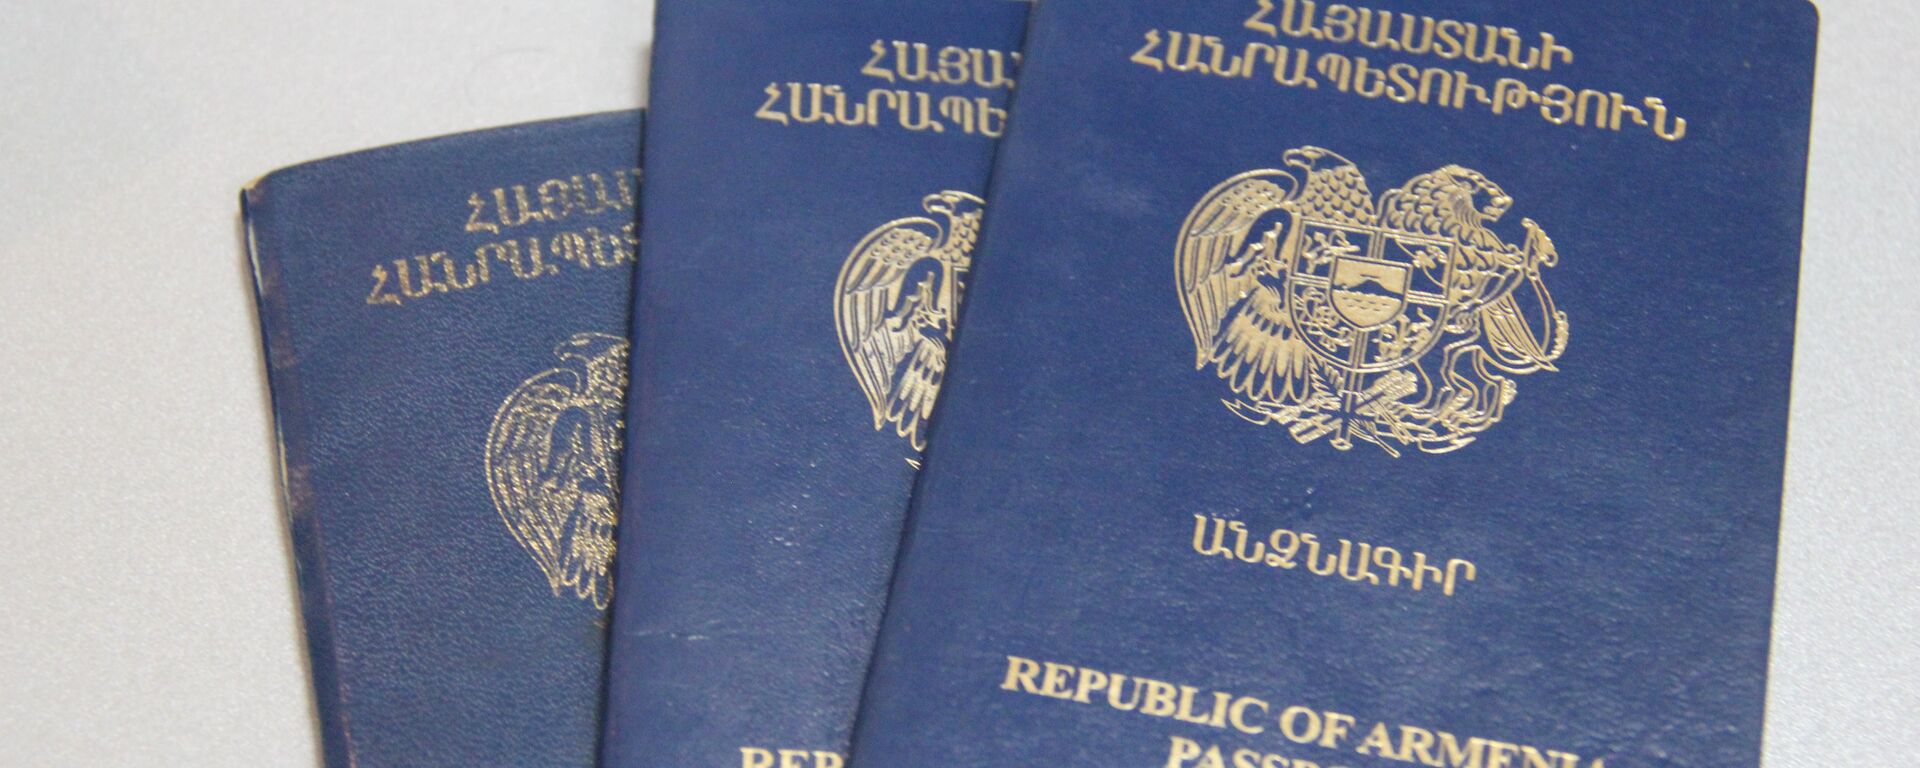 Паспорт гражданина Республики - Sputnik Армения, 1920, 16.09.2020